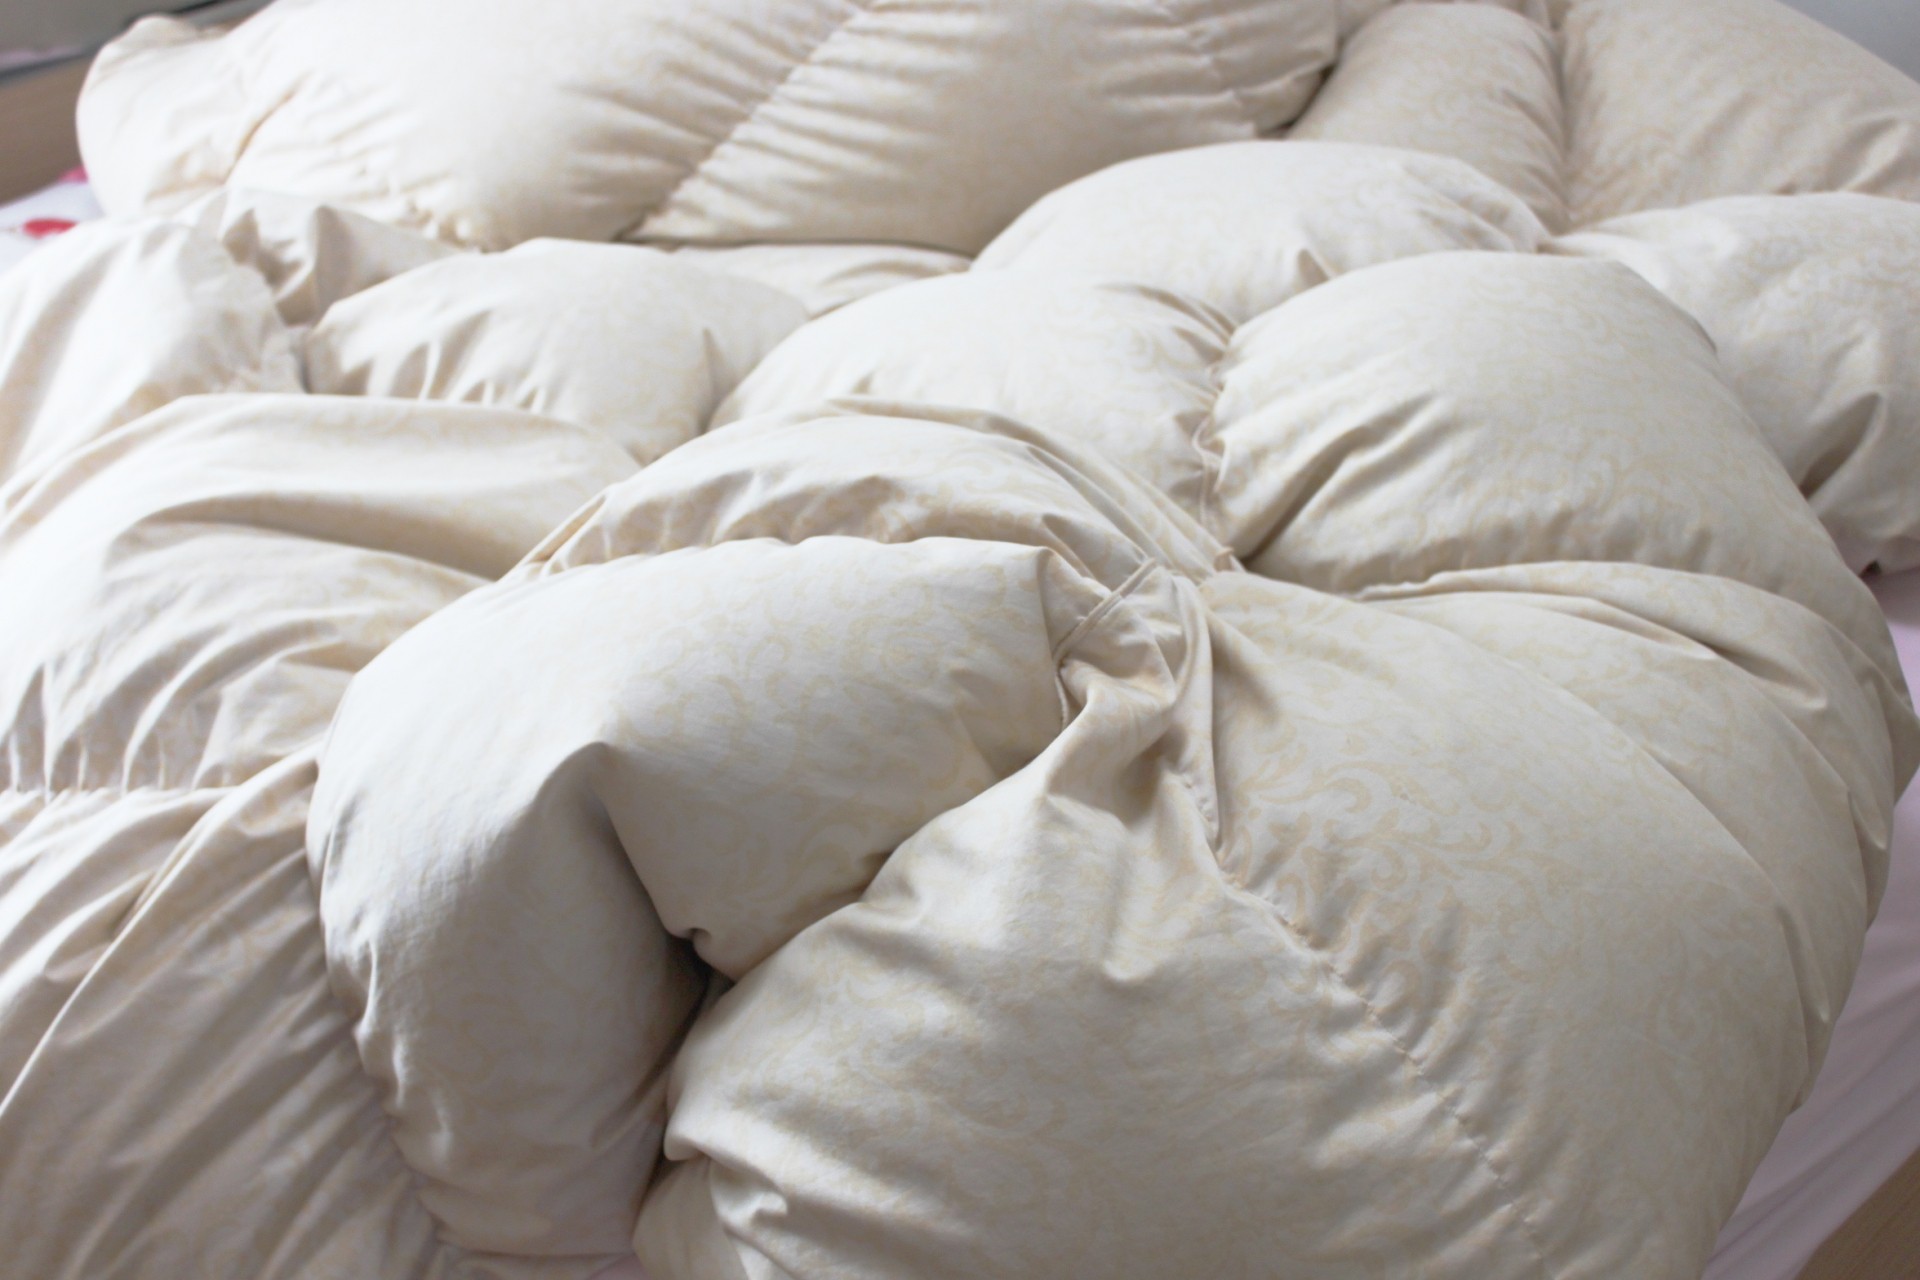 心地よい眠りを。安心・納得の羽毛布団の選び方 | スイデコブログ | スイートデコレーション